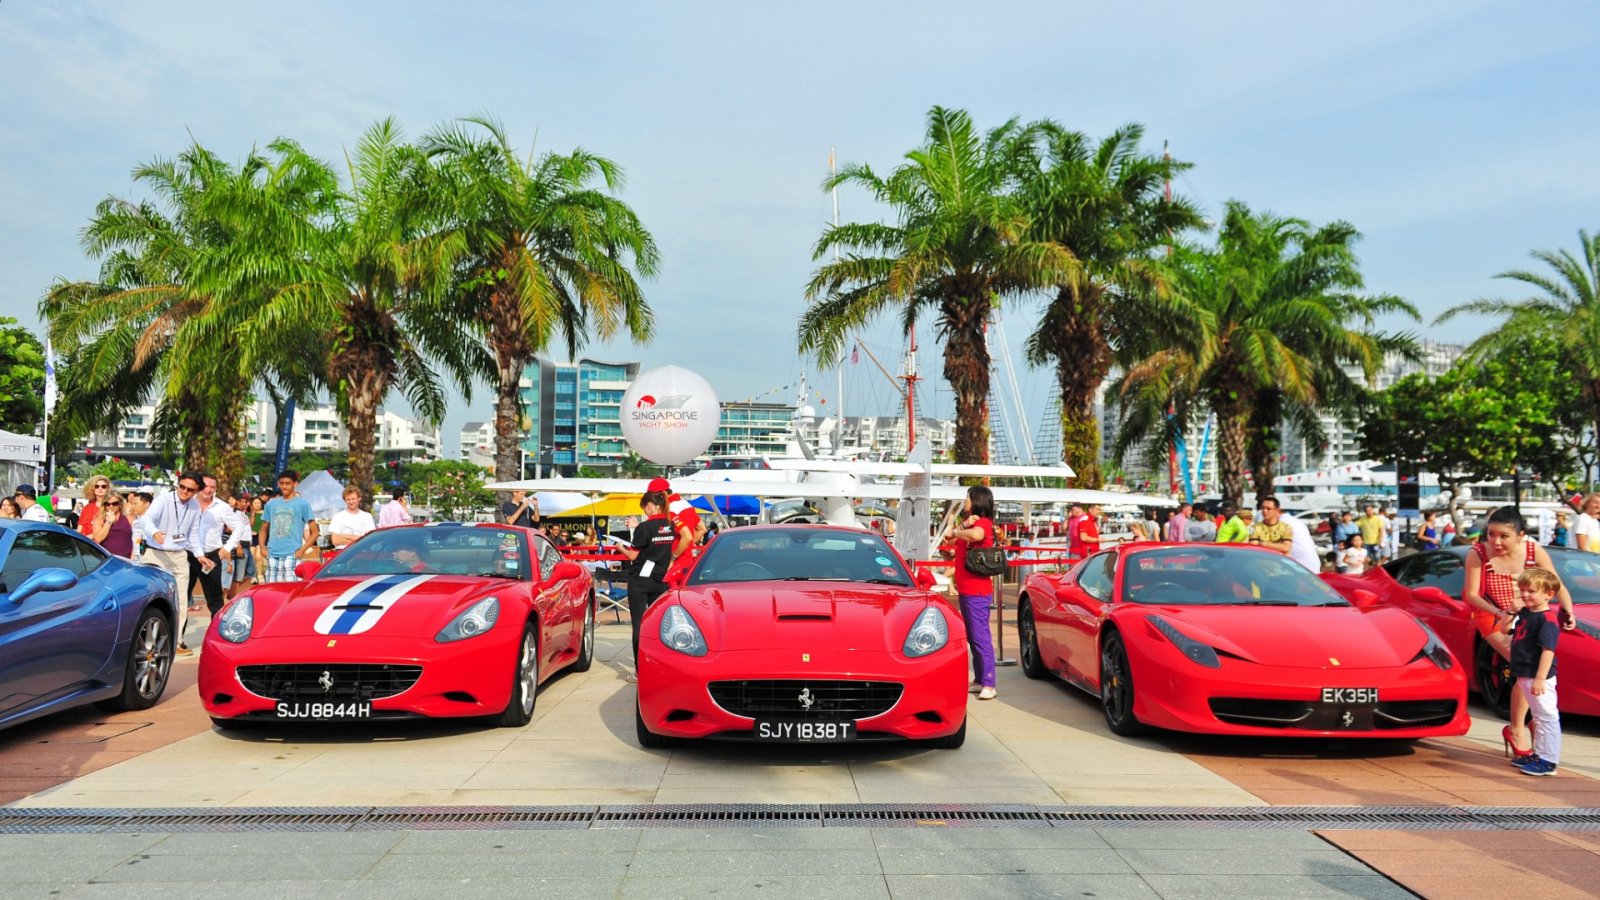 Des Ferrari époustouflantes arrivent bientôt : jetez un coup d'œil à cette vente aux enchères à venir